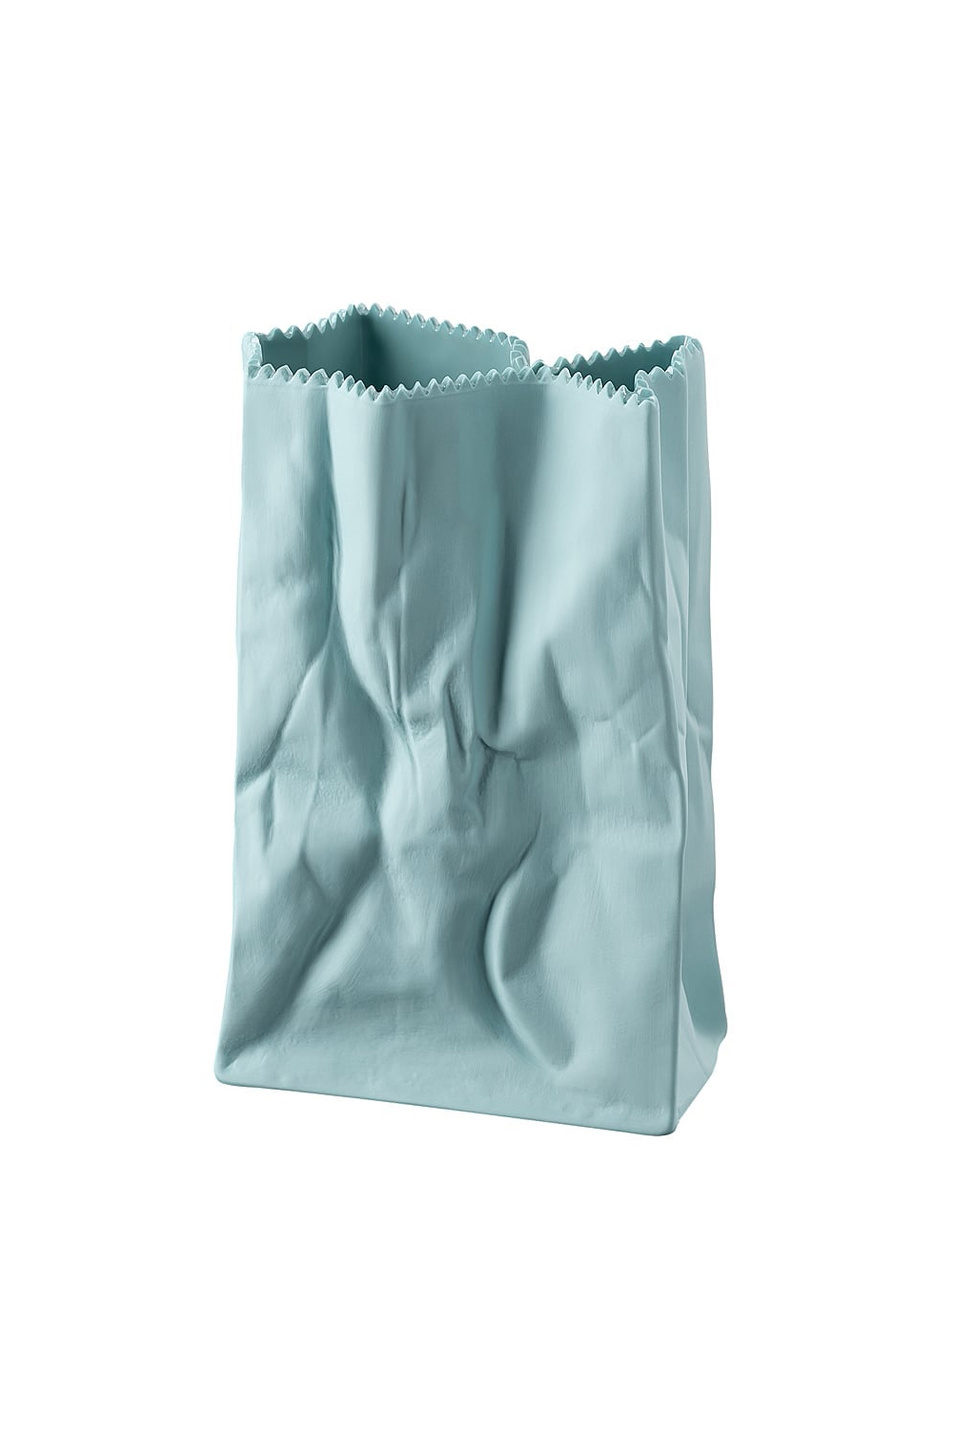 Rosenthal Ваза "Bag Mint" 18 см (цвет ), артикул 14146-426331-29428 | Фото 1